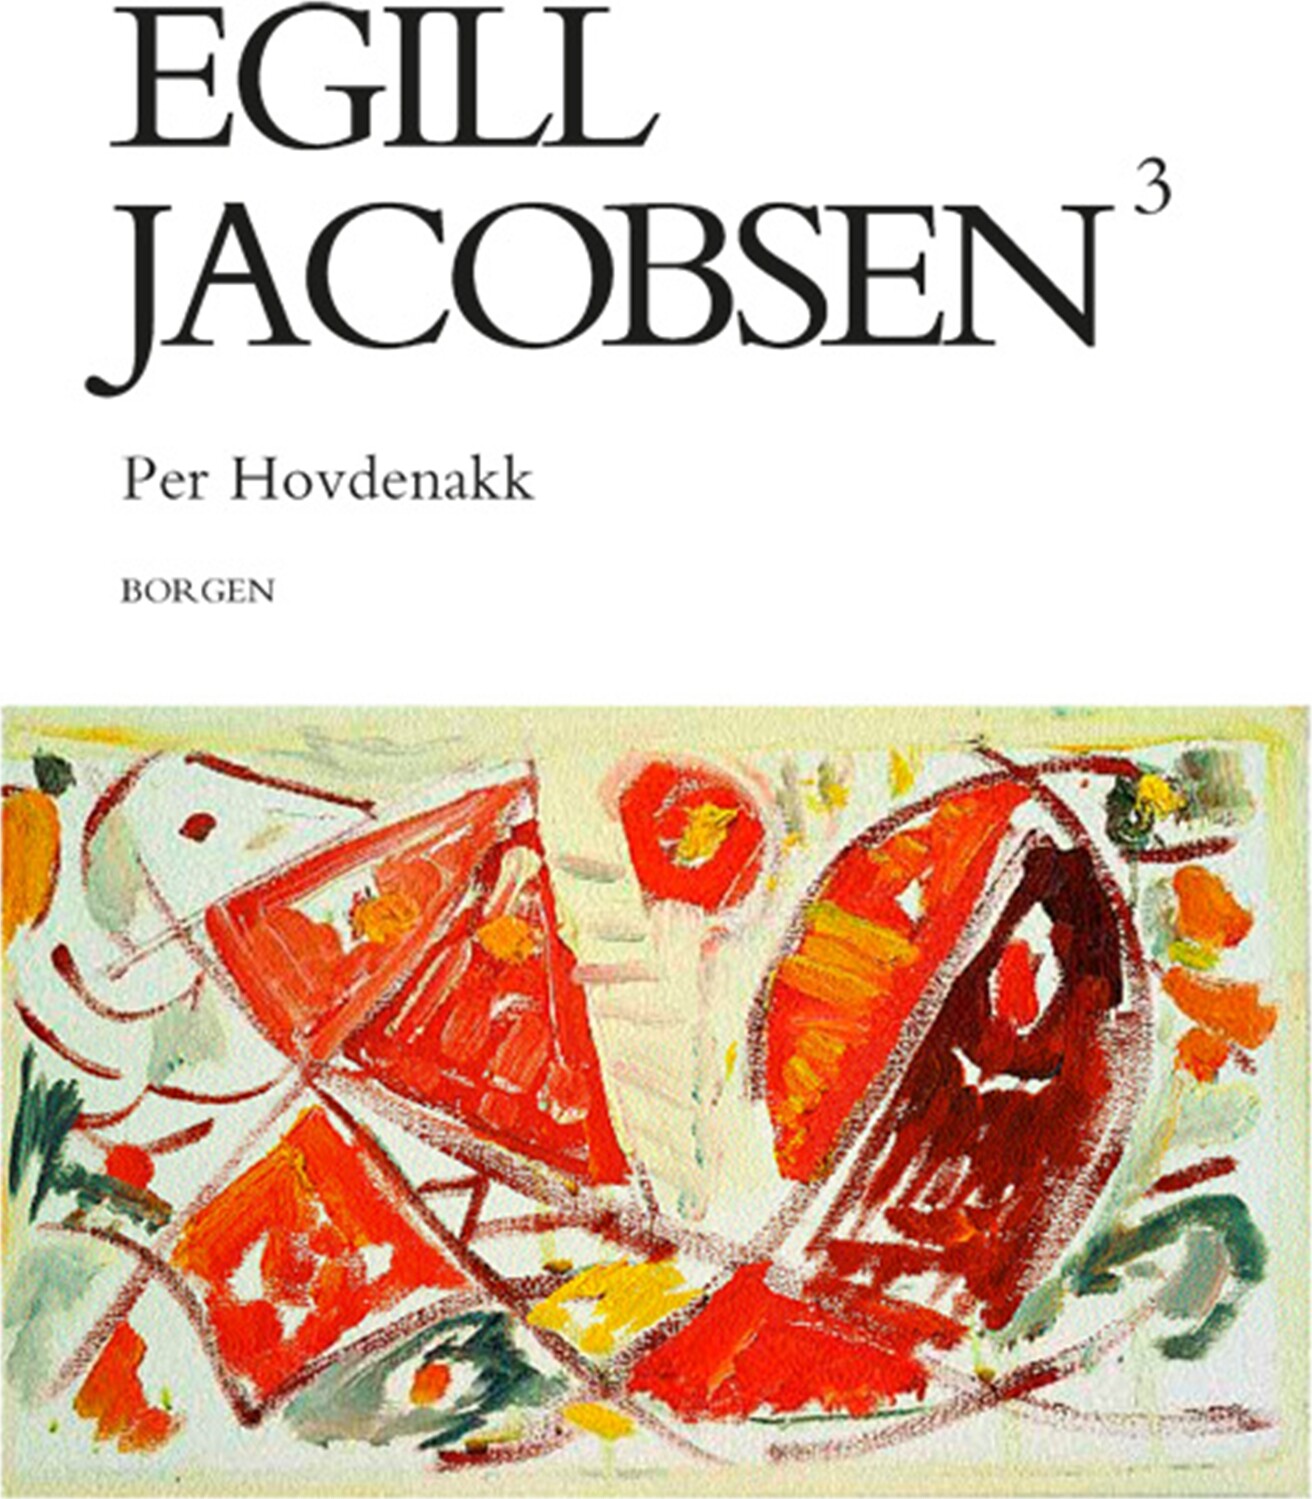 Egill Jacobsen 3 - Per Hovdenakk - Bog